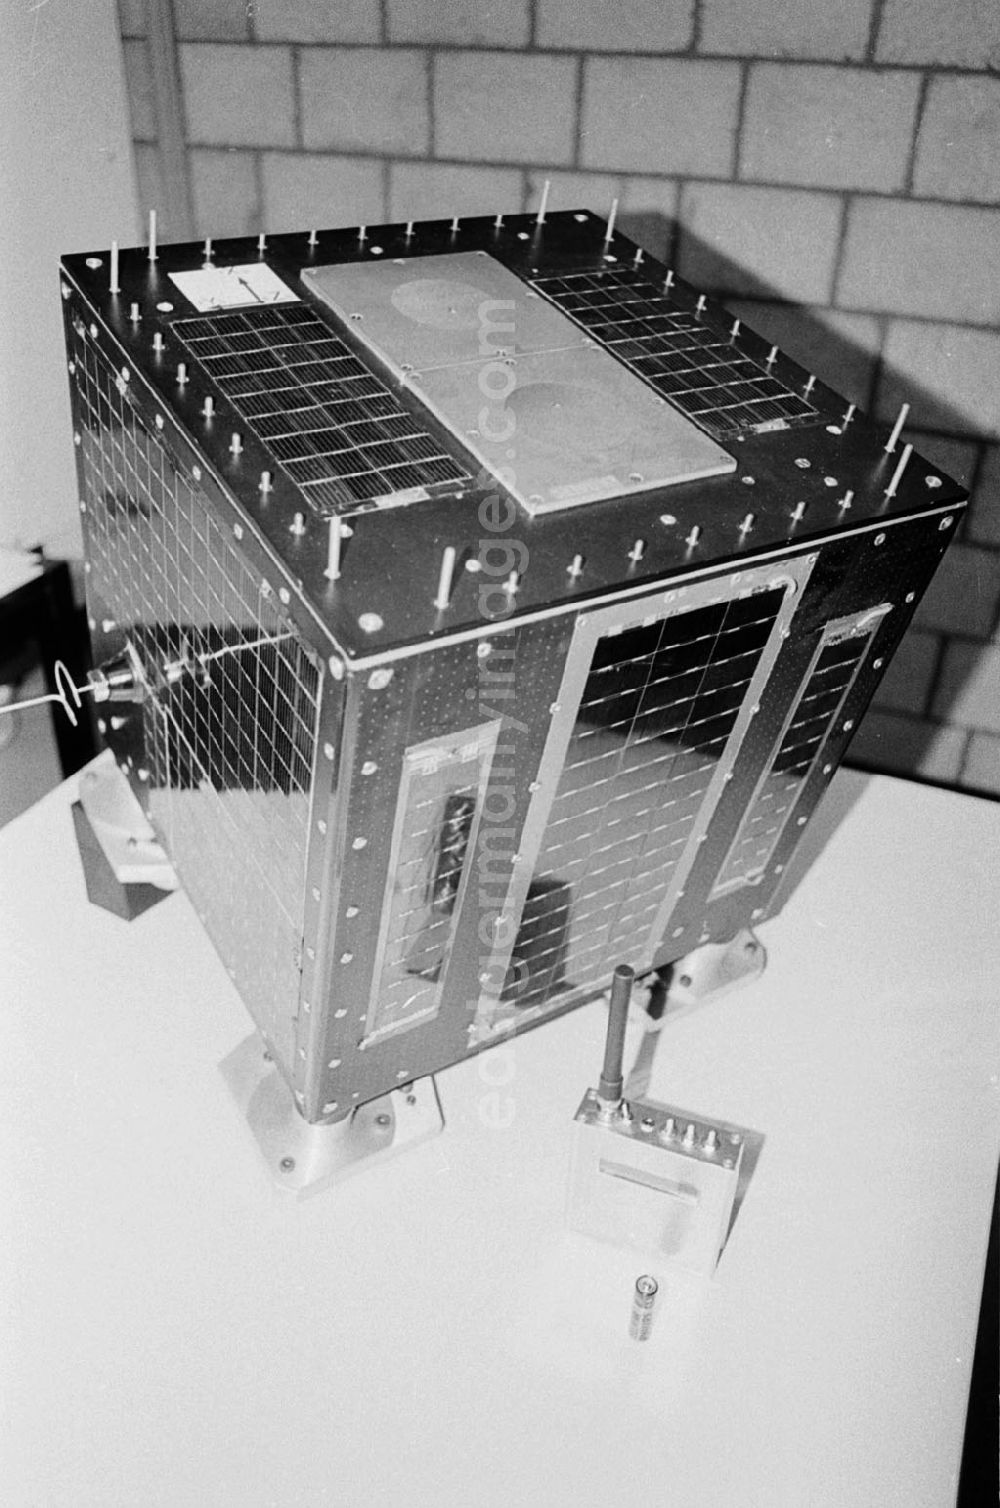 GDR image archive: - TUBSAT-Satellit Umschlagnummer: 7323